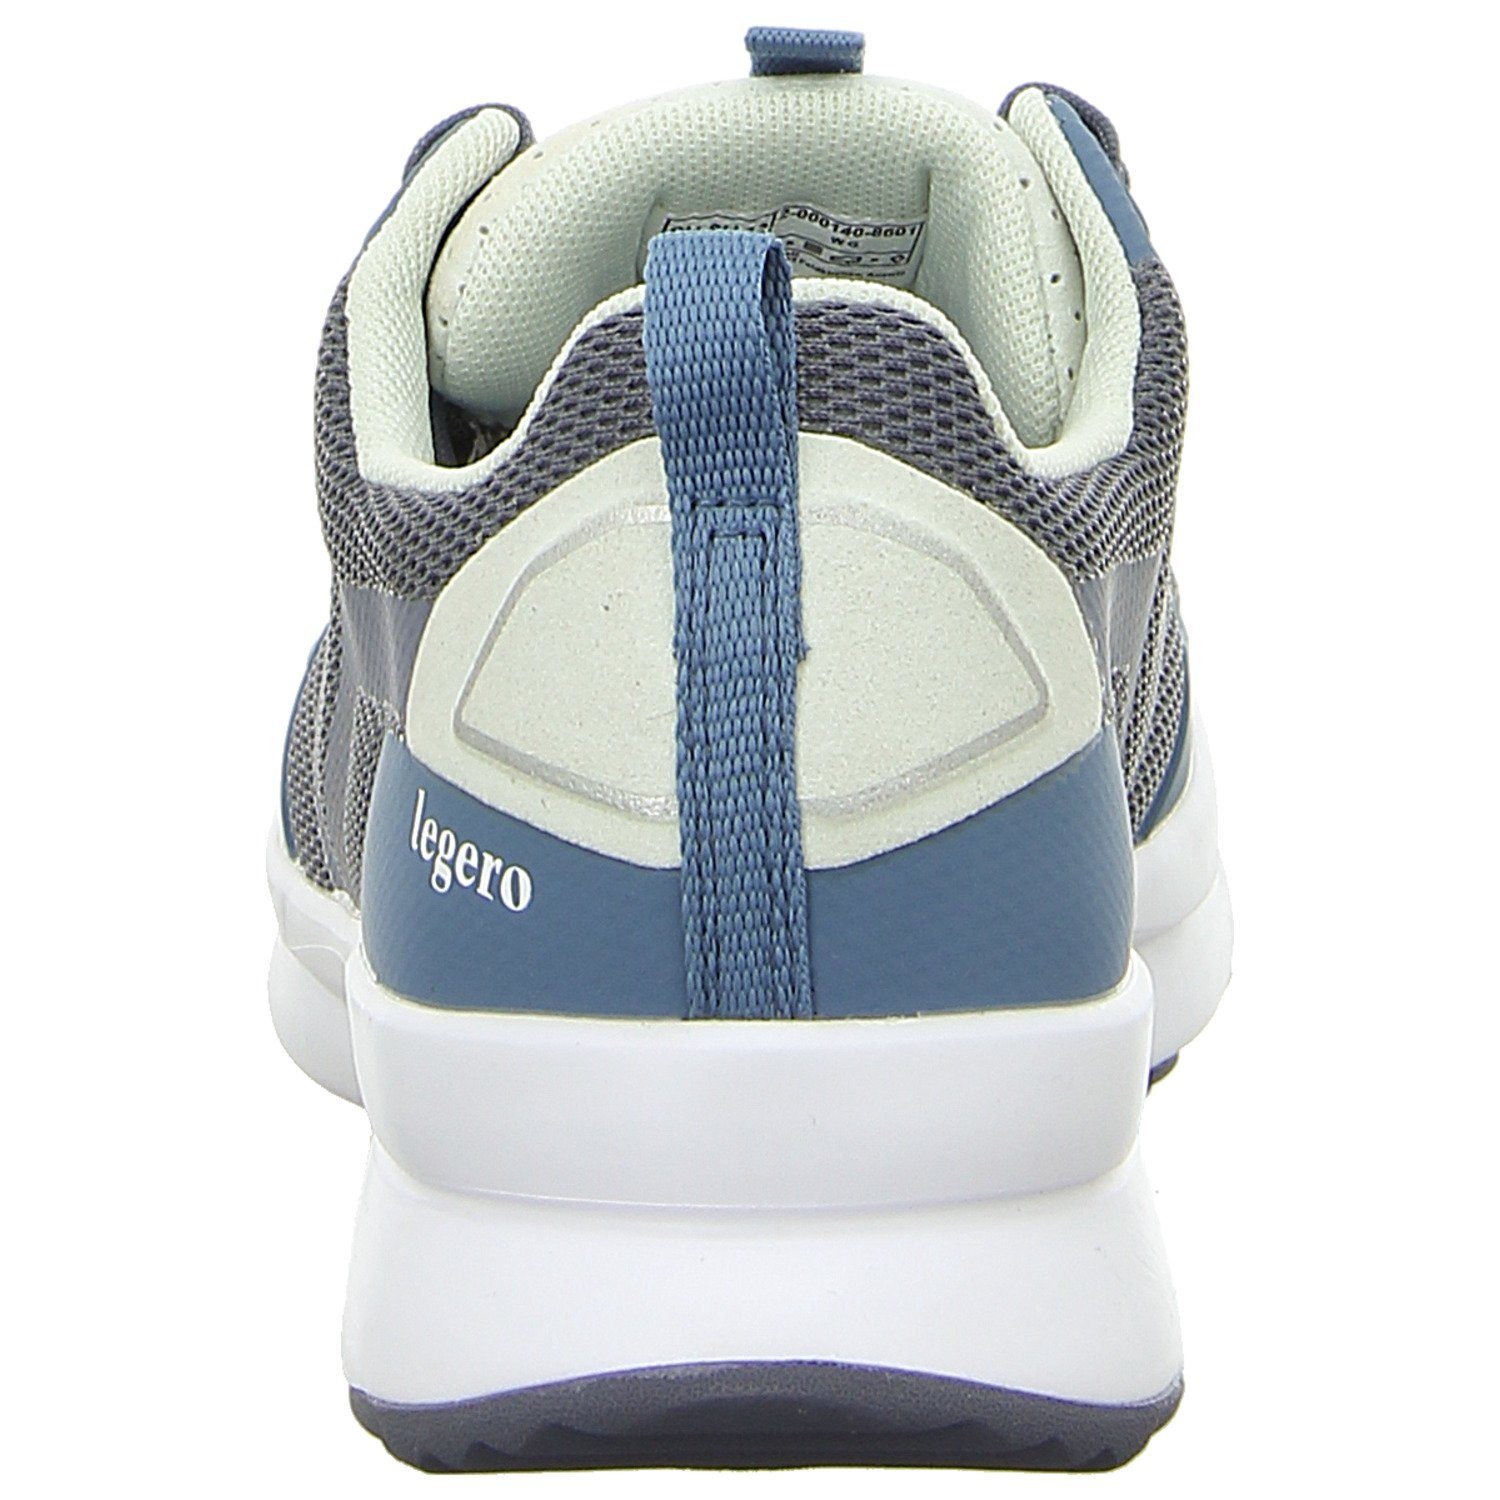 Sneaker Legero Ready blau-bunt-kombiniert-blau-bunt-kombiniert